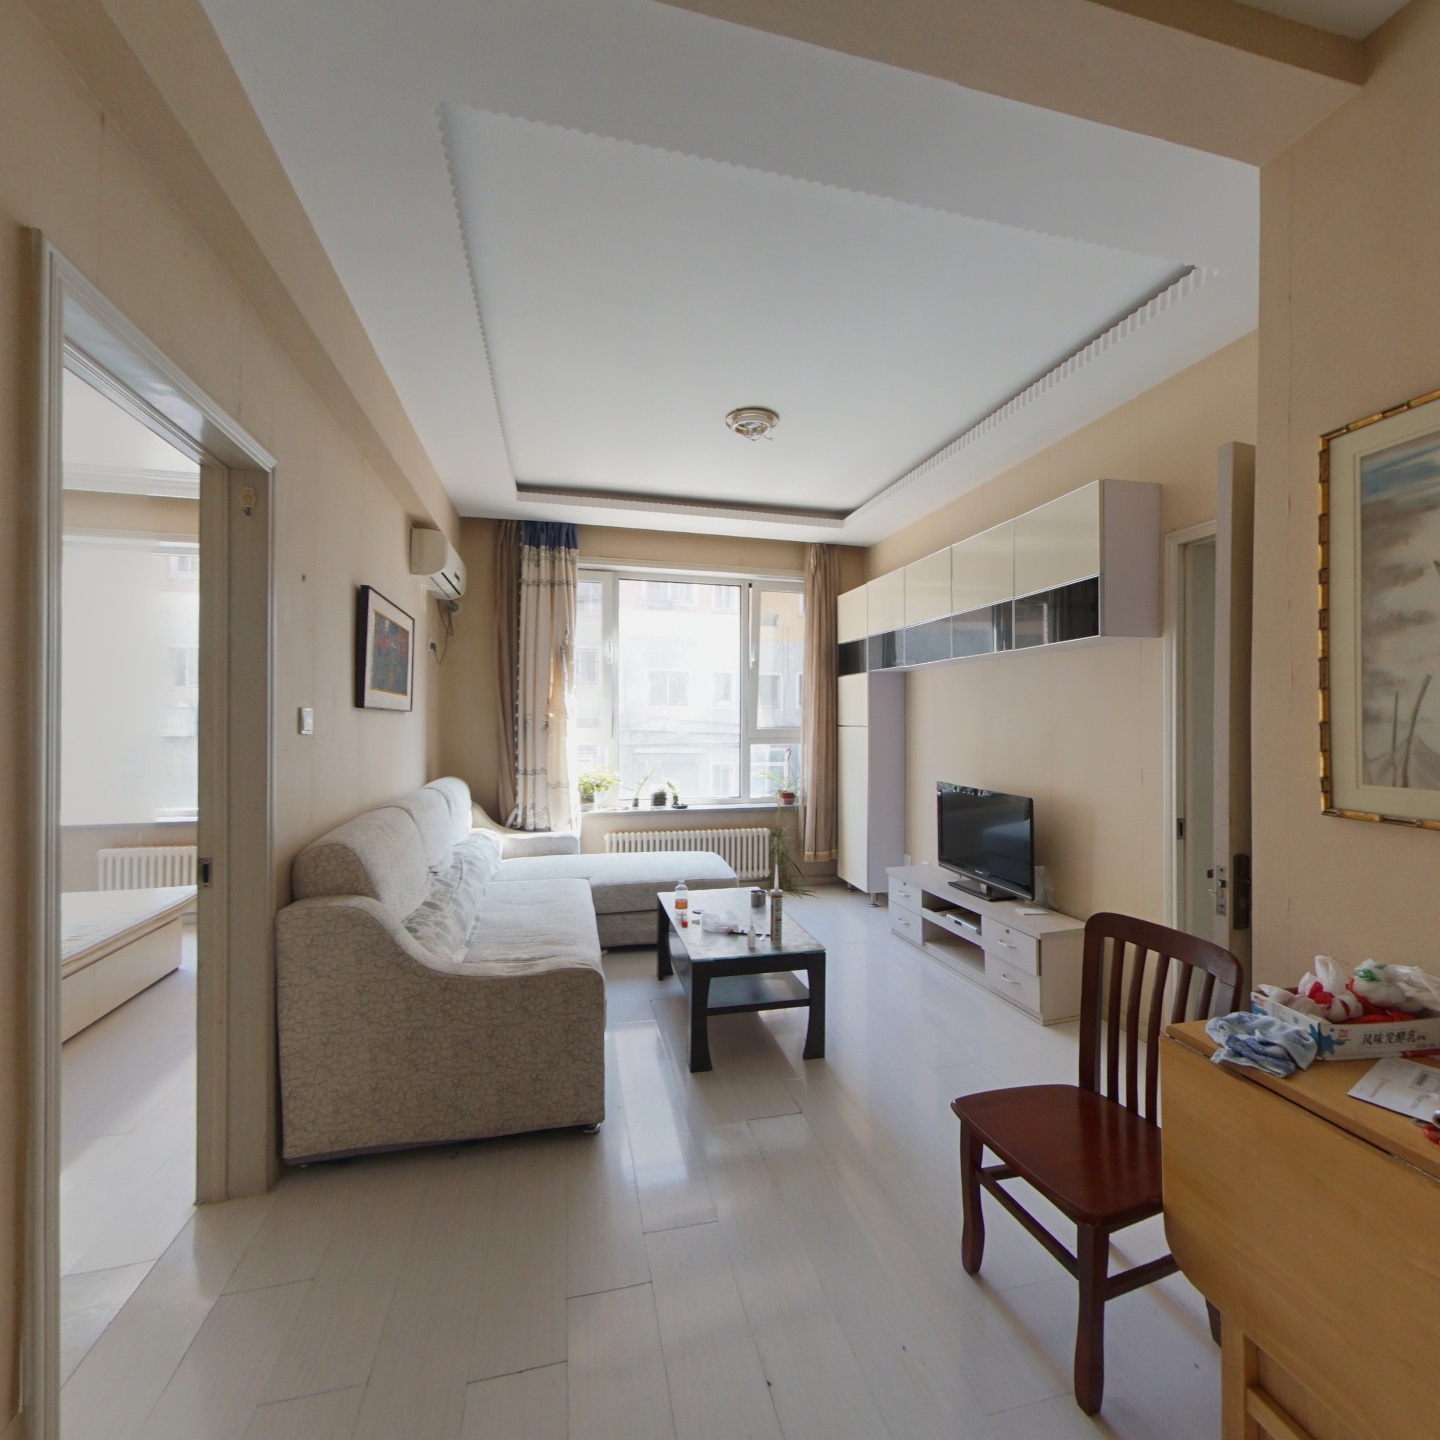 一室一厅标准南向精装房+采光充足+安静的小区环境